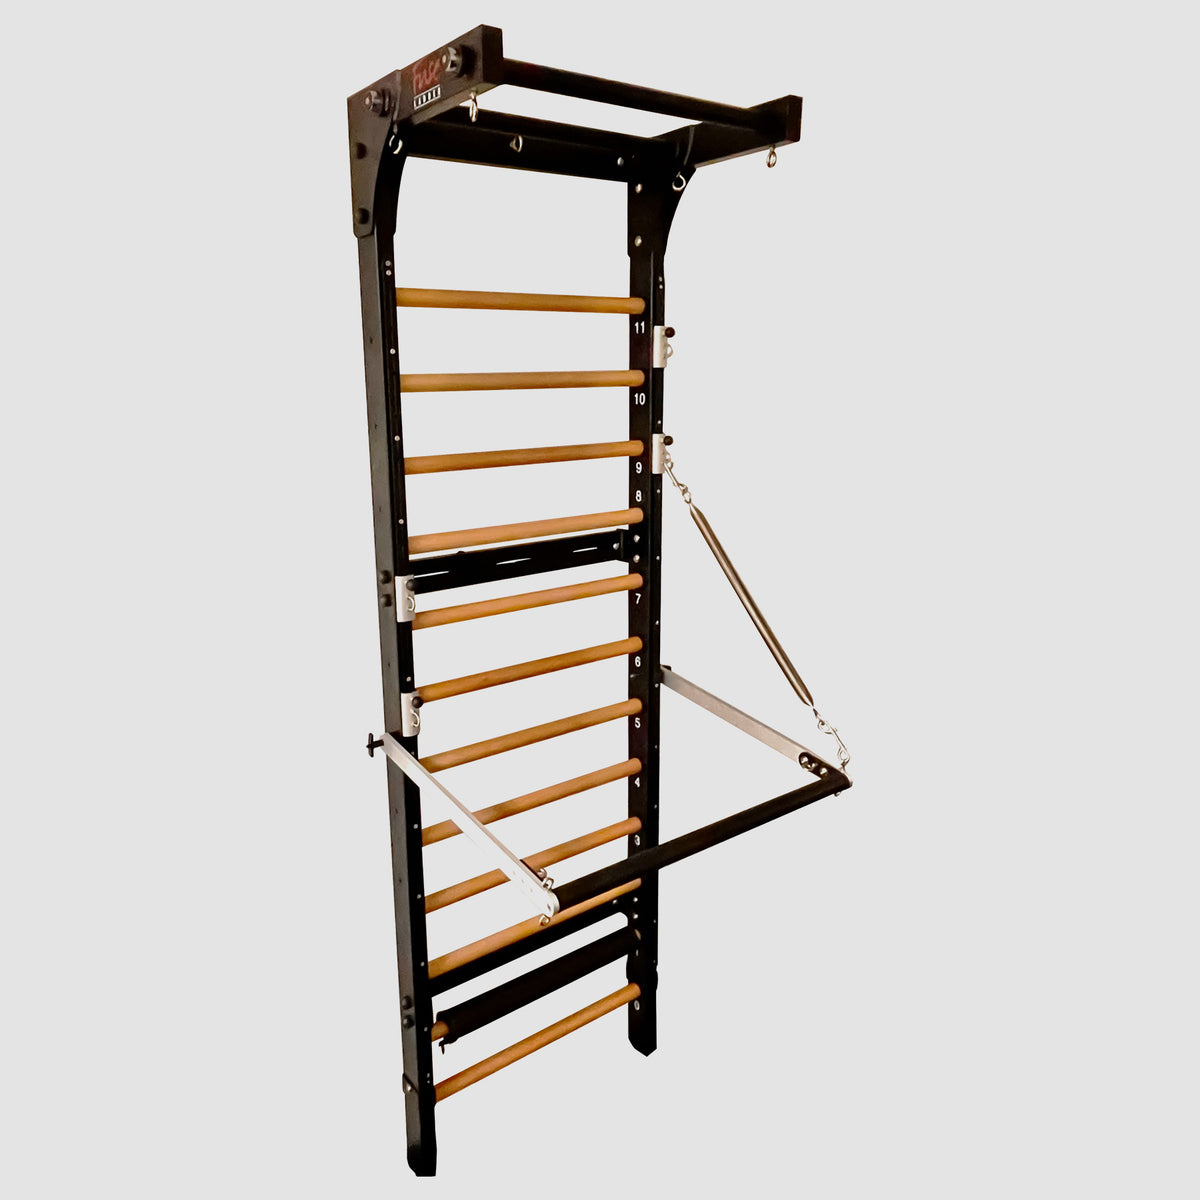 Ladder Safety Strap for top of ladder